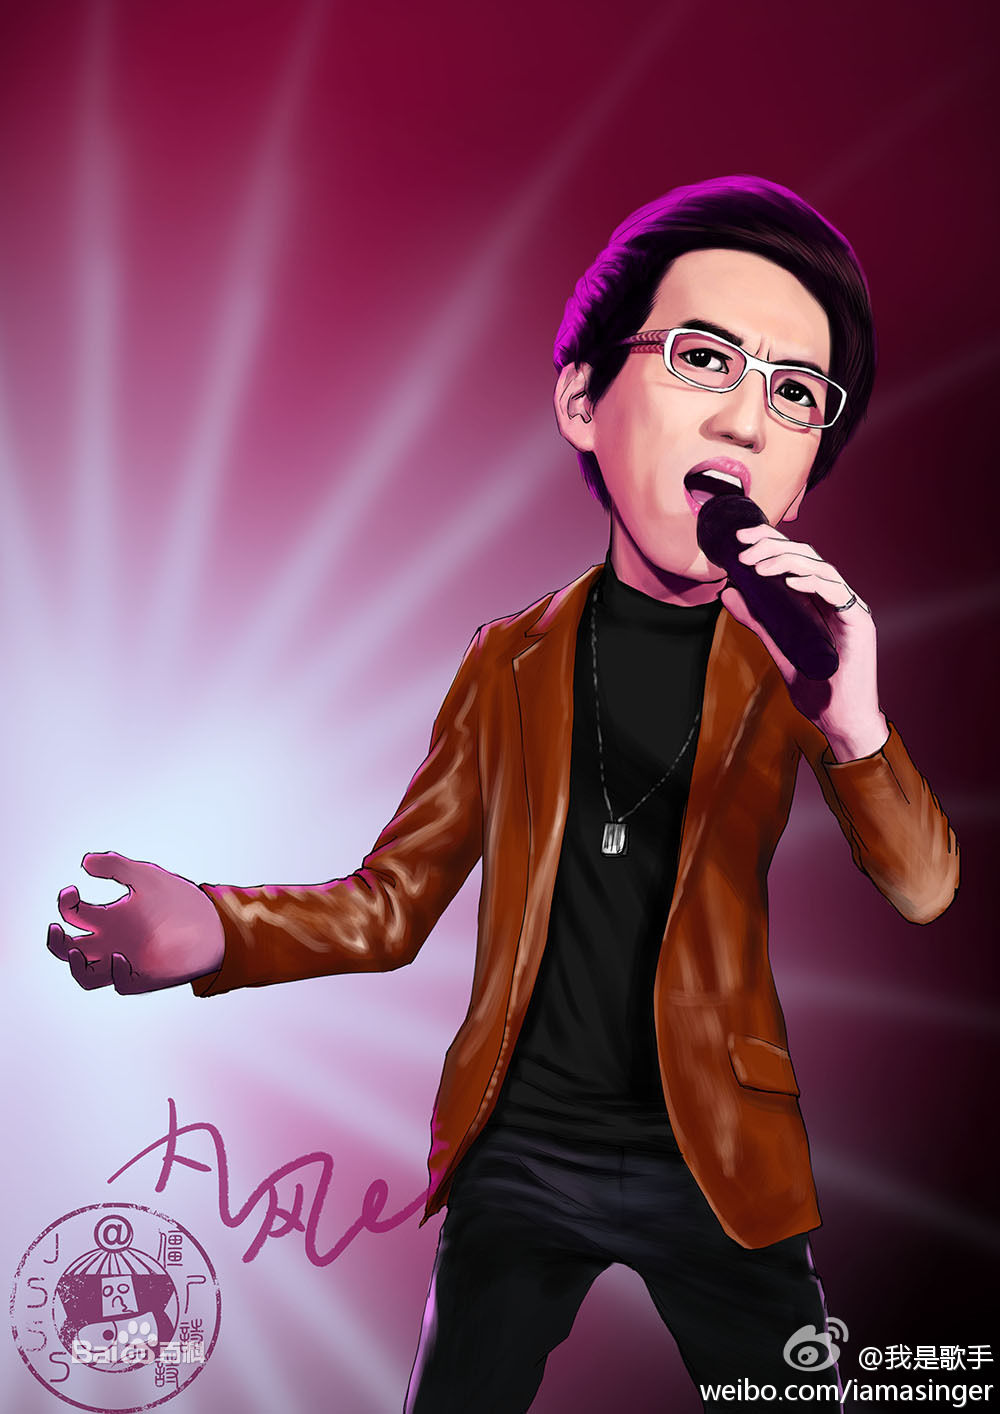 林志炫《我是歌手》第九期漫畫形象